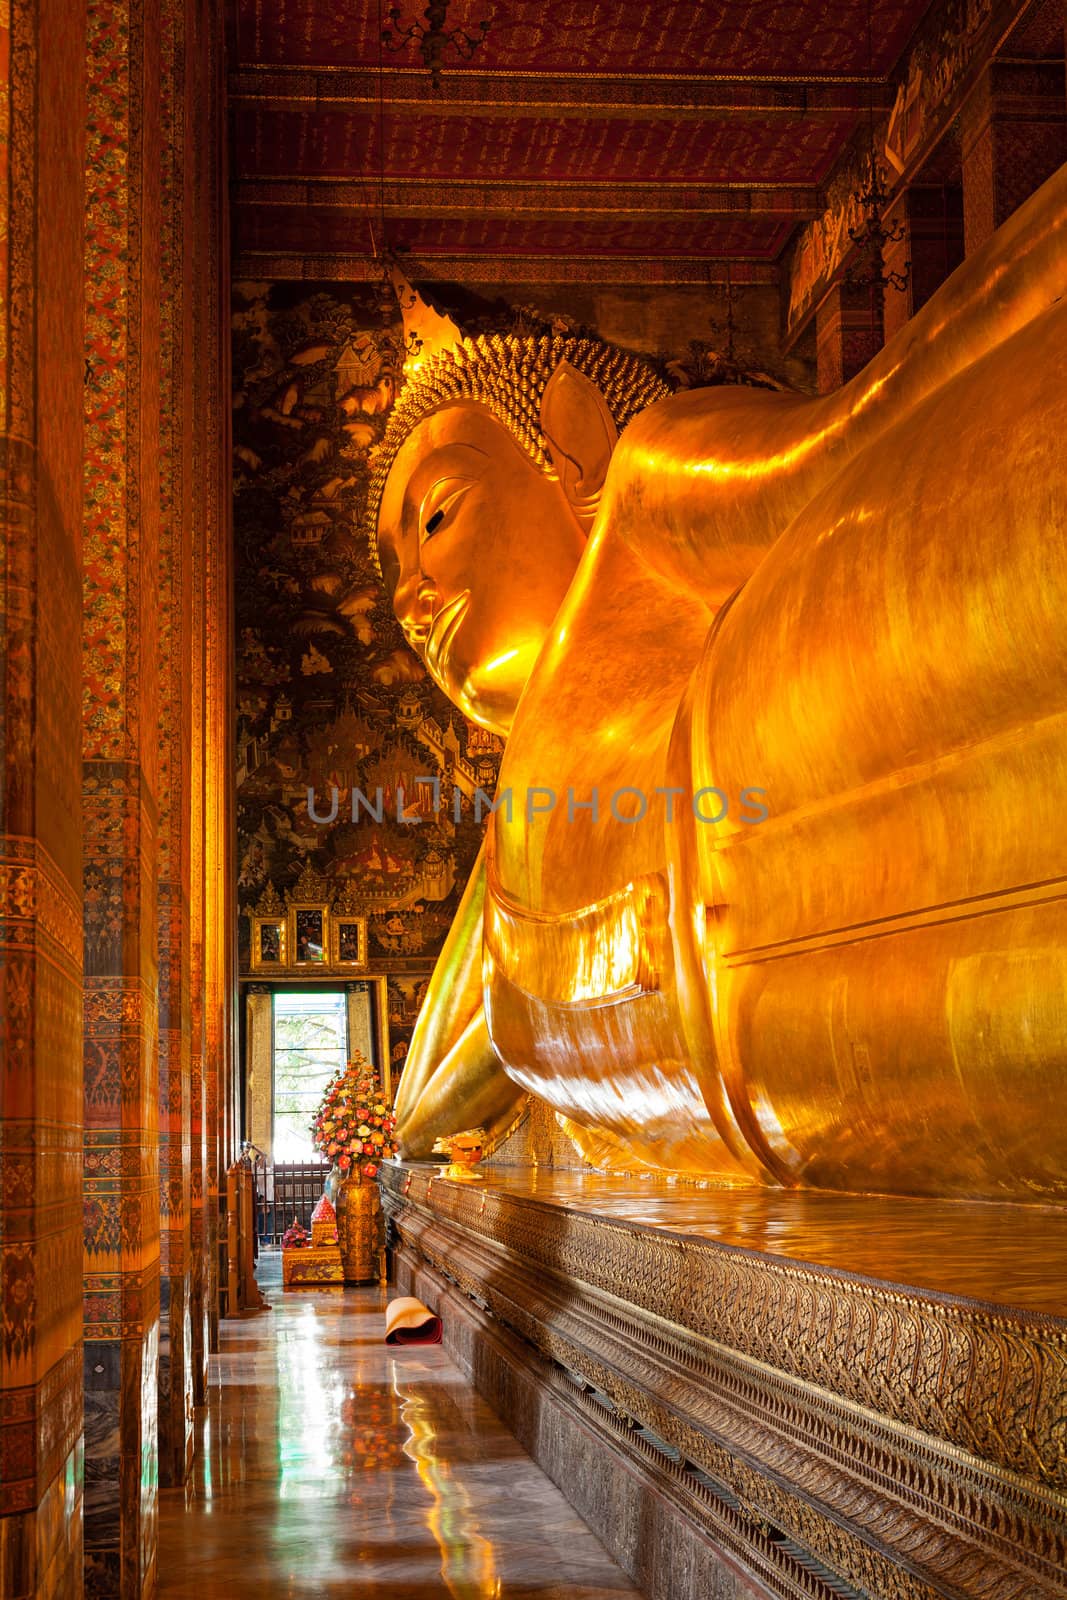 Reclining Buddha, Thailand by dimol